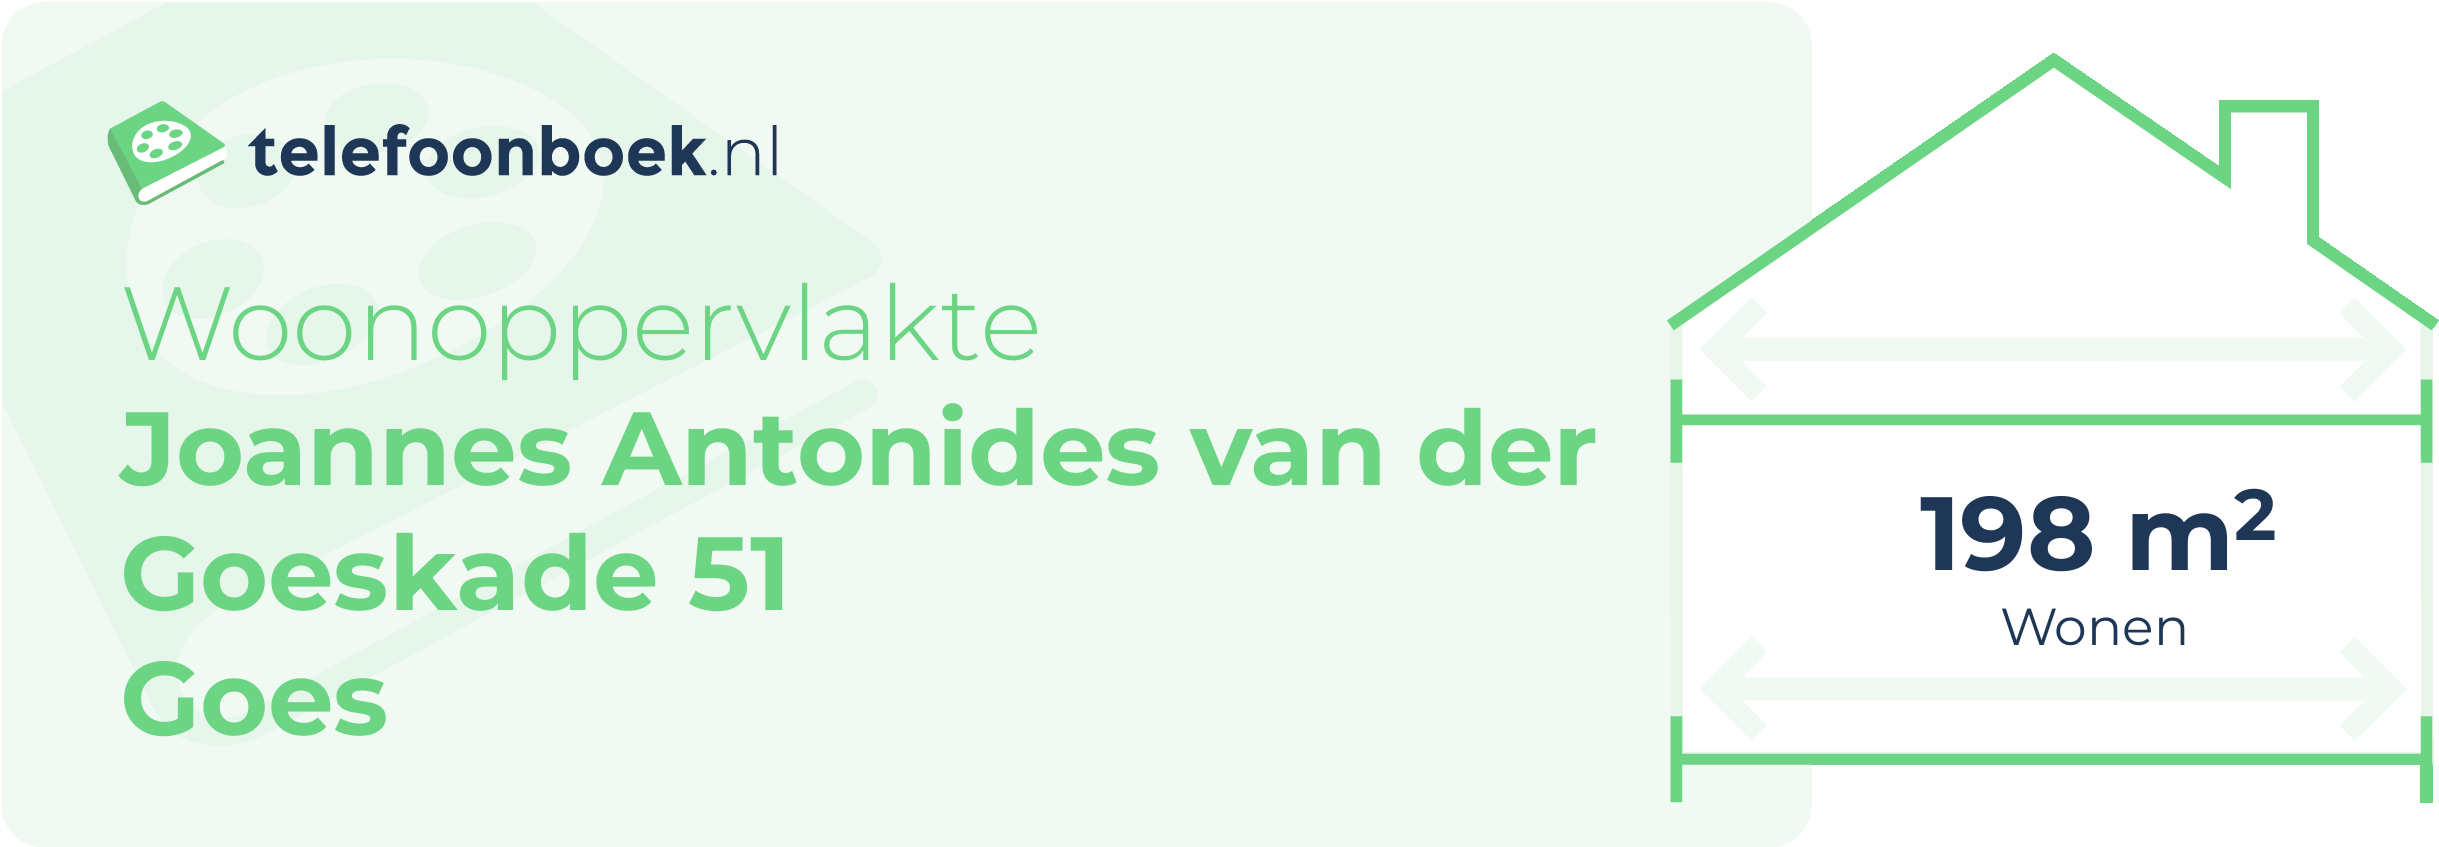 Woonoppervlakte Joannes Antonides Van Der Goeskade 51 Goes